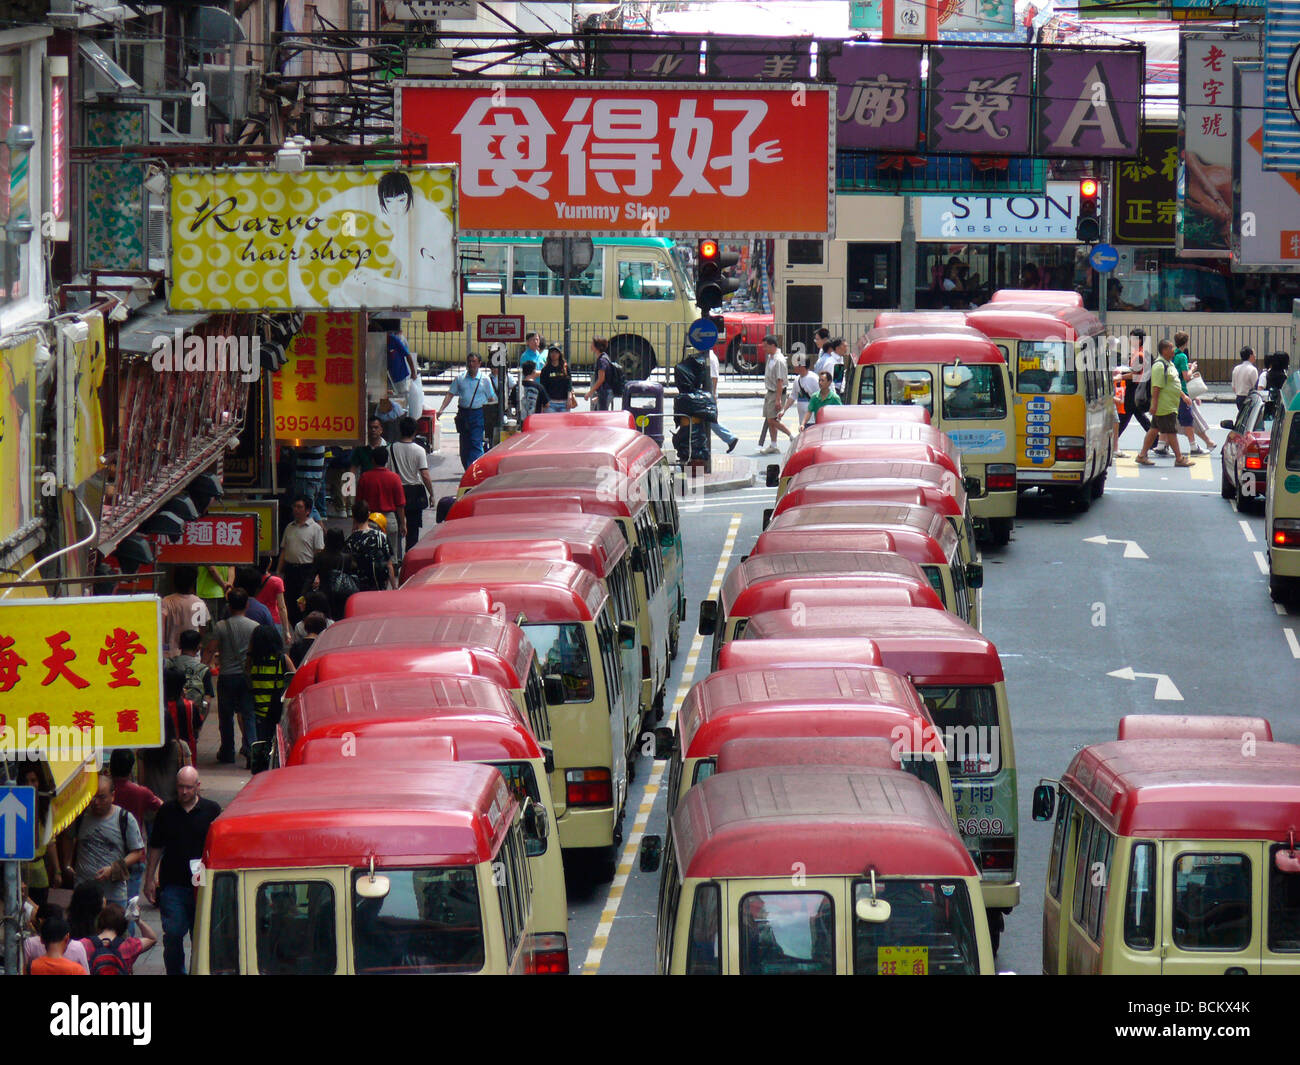 China Hong Kong Mong Kok hustle Street scene Stock Photo